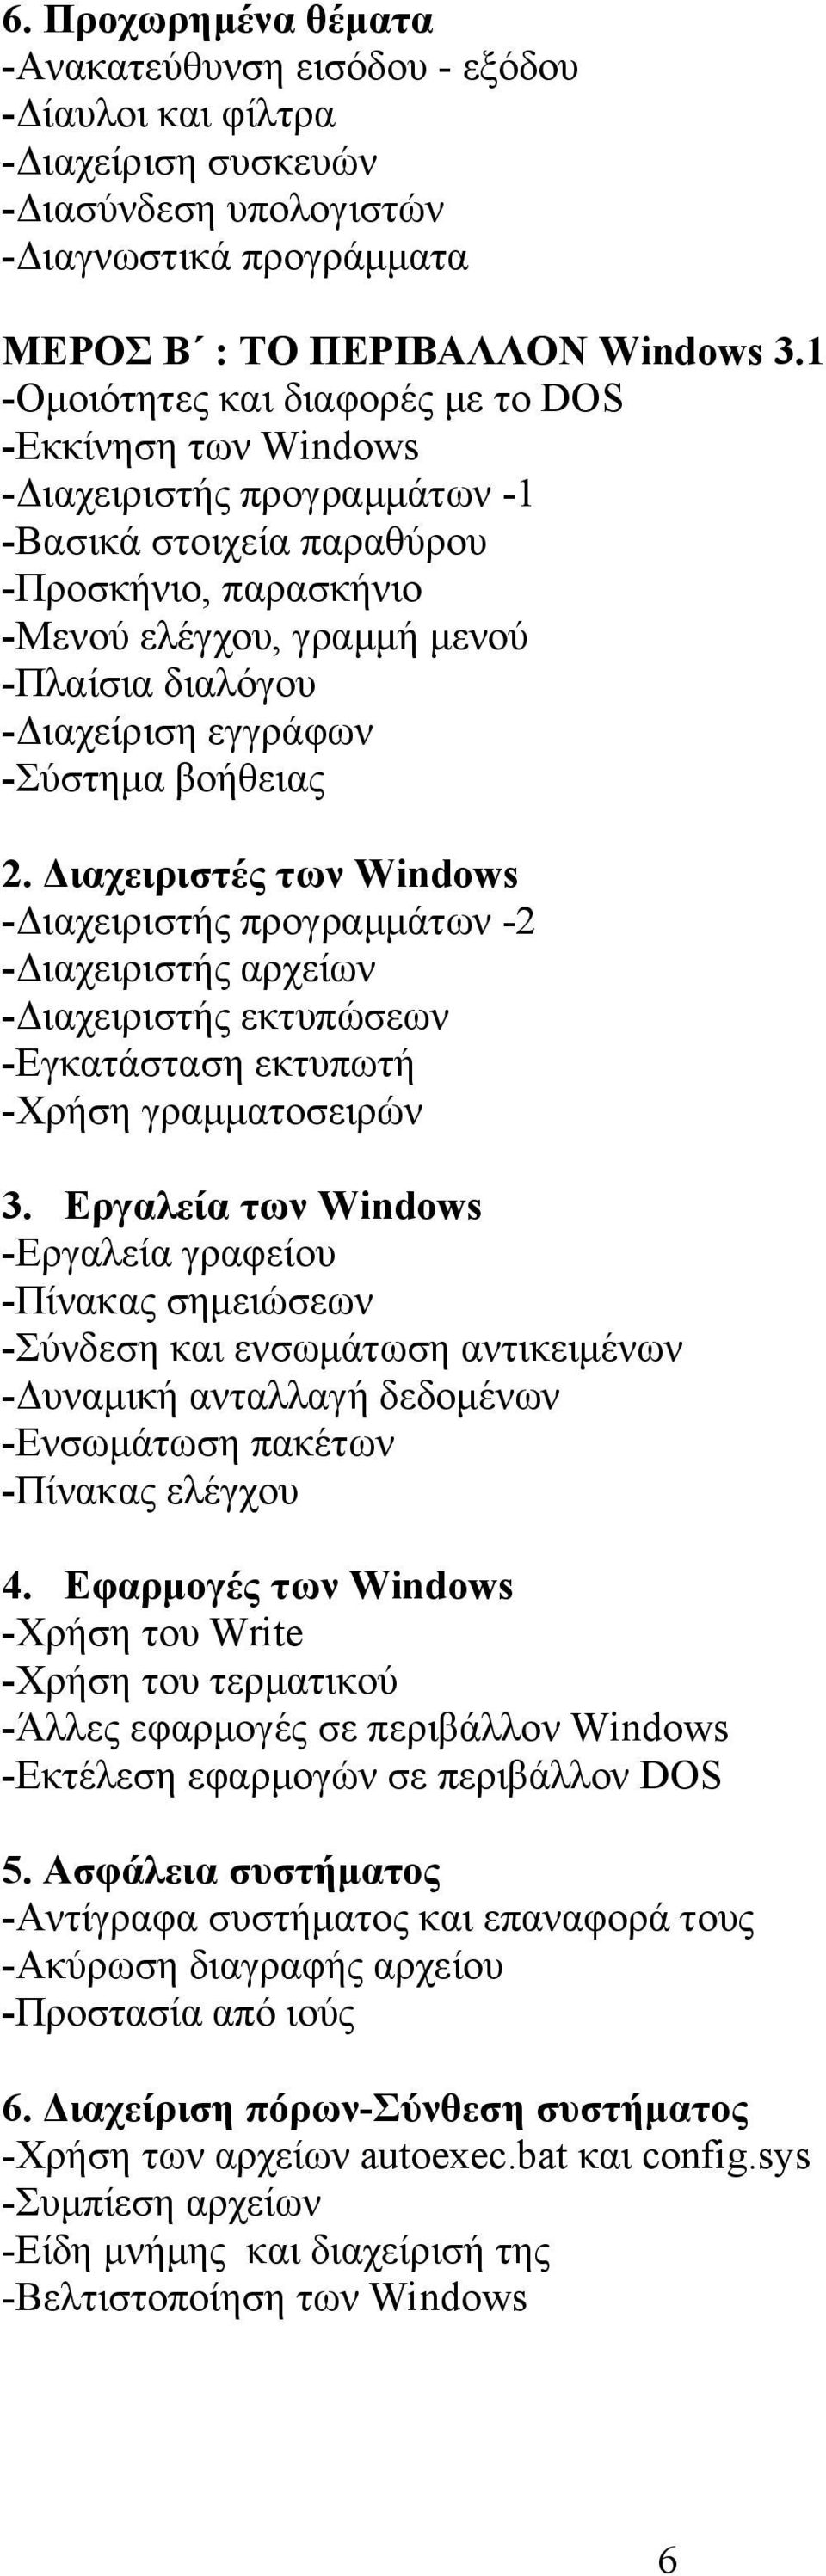 εγγράφων -Σύστημα βοήθειας 2. Διαχειριστές των Windows -Διαχειριστής προγραμμάτων -2 -Διαχειριστής αρχείων -Διαχειριστής εκτυπώσεων -Εγκατάσταση εκτυπωτή -Χρήση γραμματοσειρών 3.